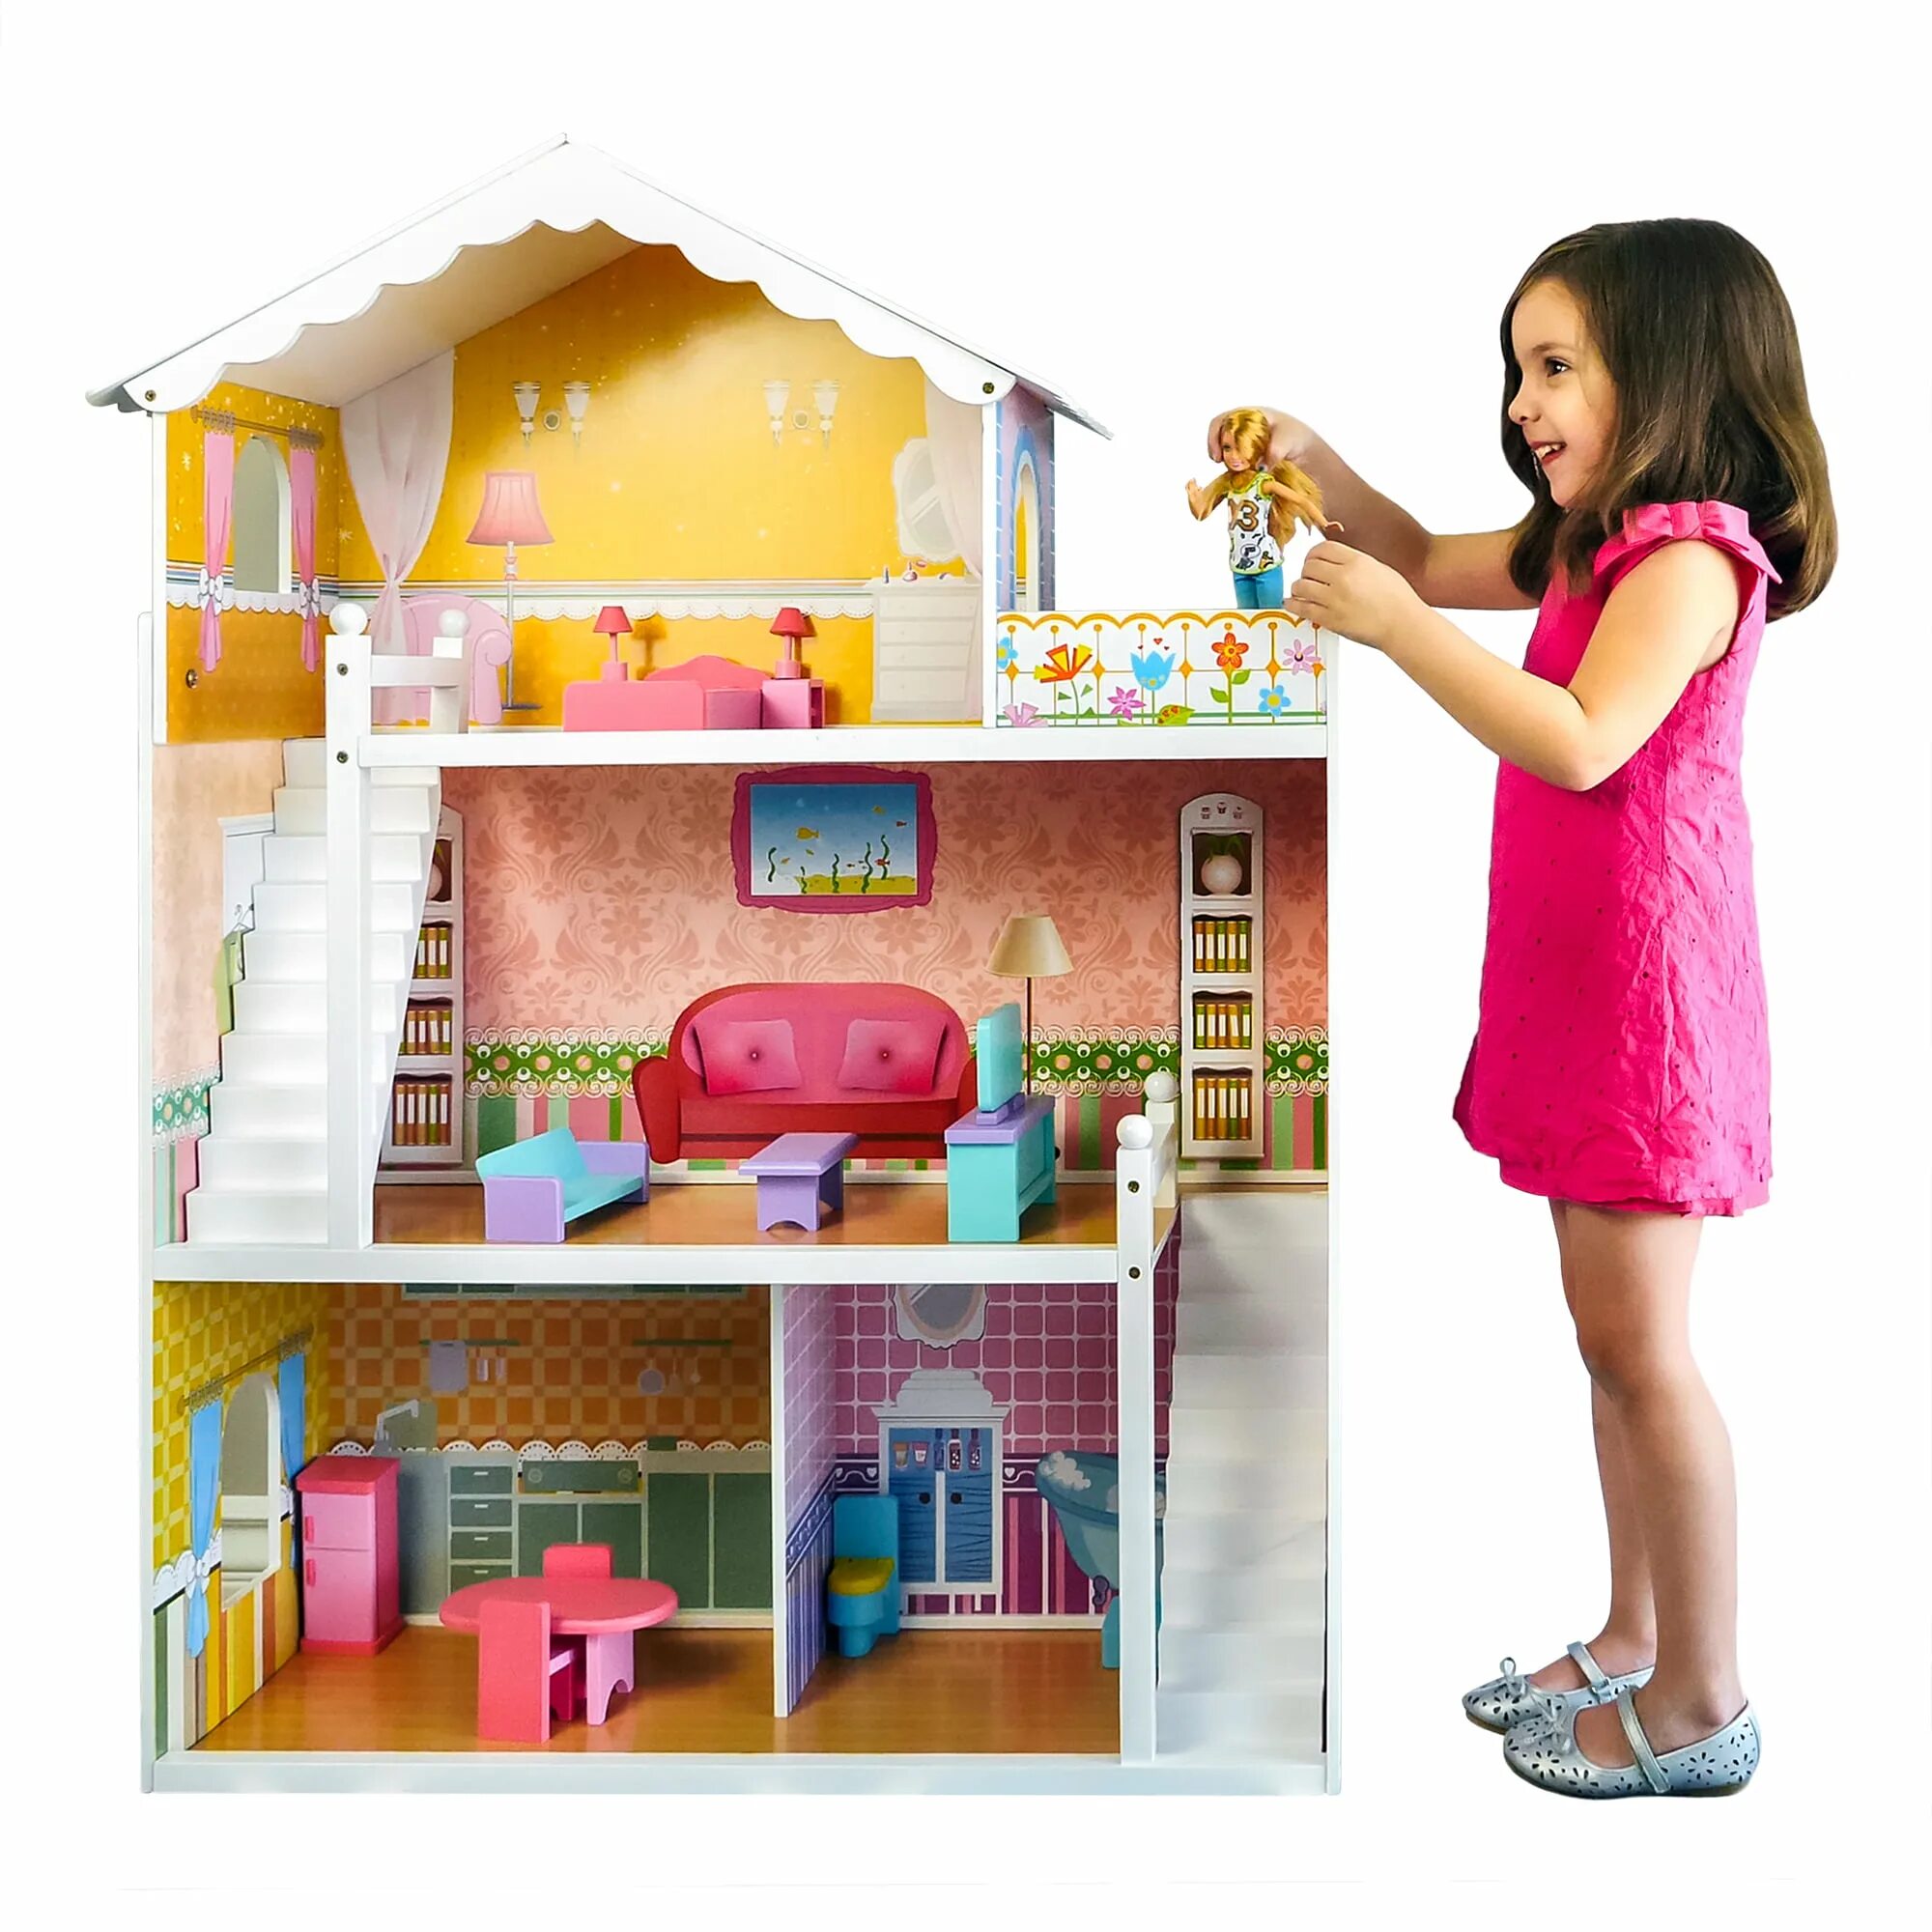 Домик для Барби розовый Dollhouse. Дрим Хаус кукольный домик. Дрим Хаус деревянный кукольный домик. Домик для Барби Дрим Хаус. My little house